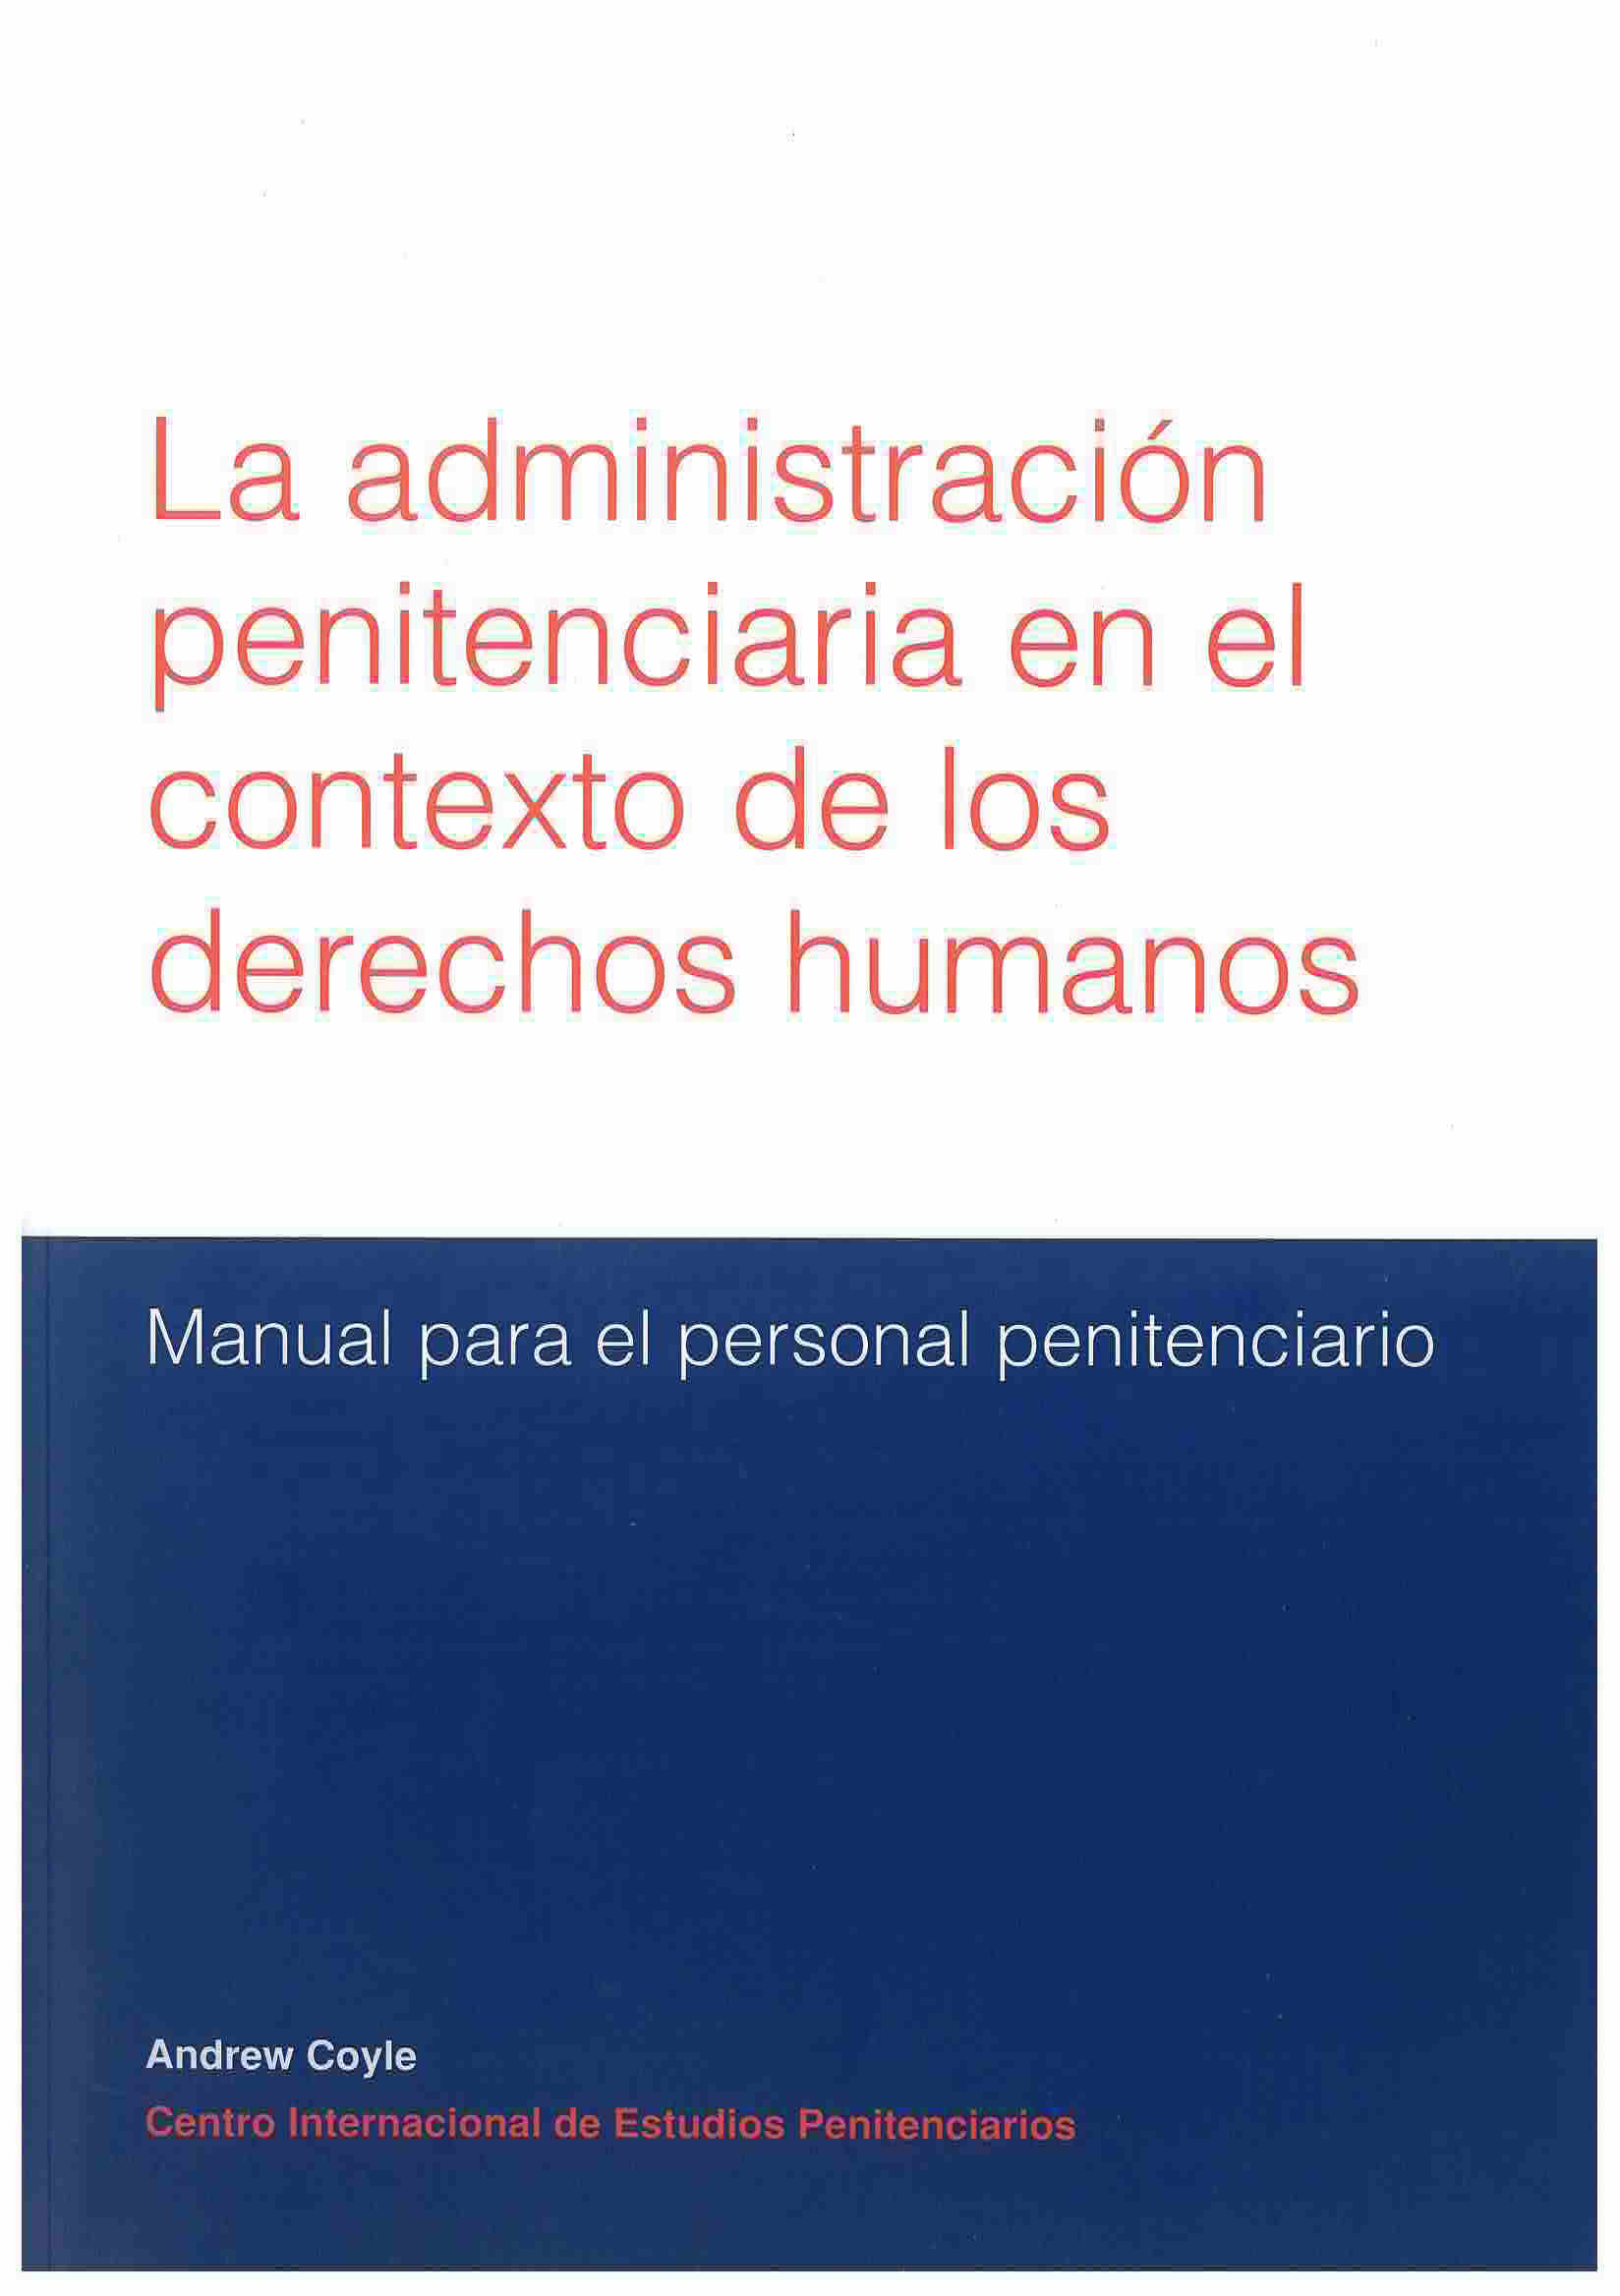 La administración penitenciaria en el contexto de los derechos humanos: Manual para el personal penitenciario